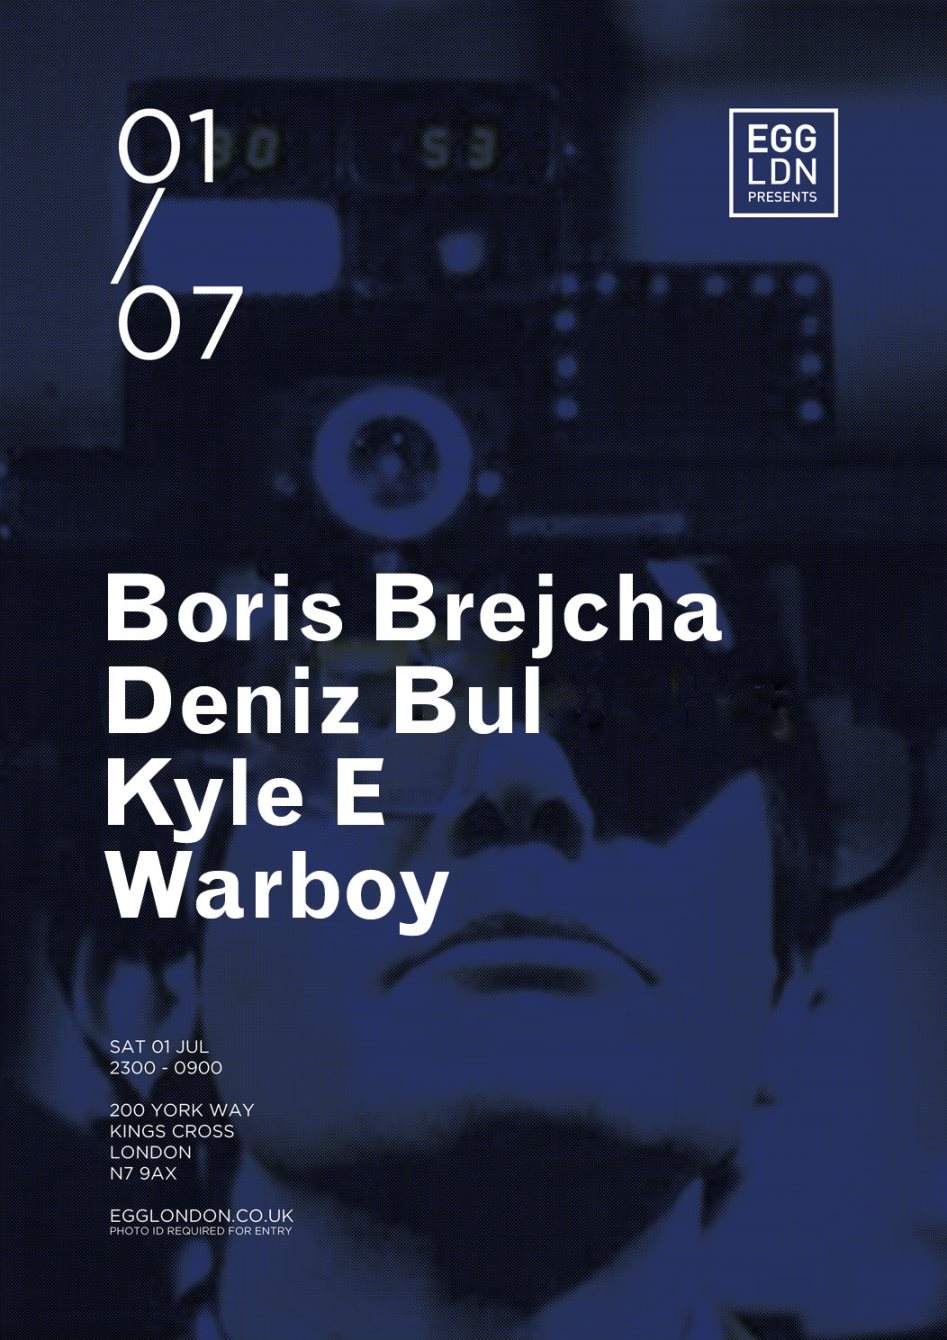 EGG presents: Boris Brejcha, Deniz Bul, Kyle E, Warboy - Página frontal